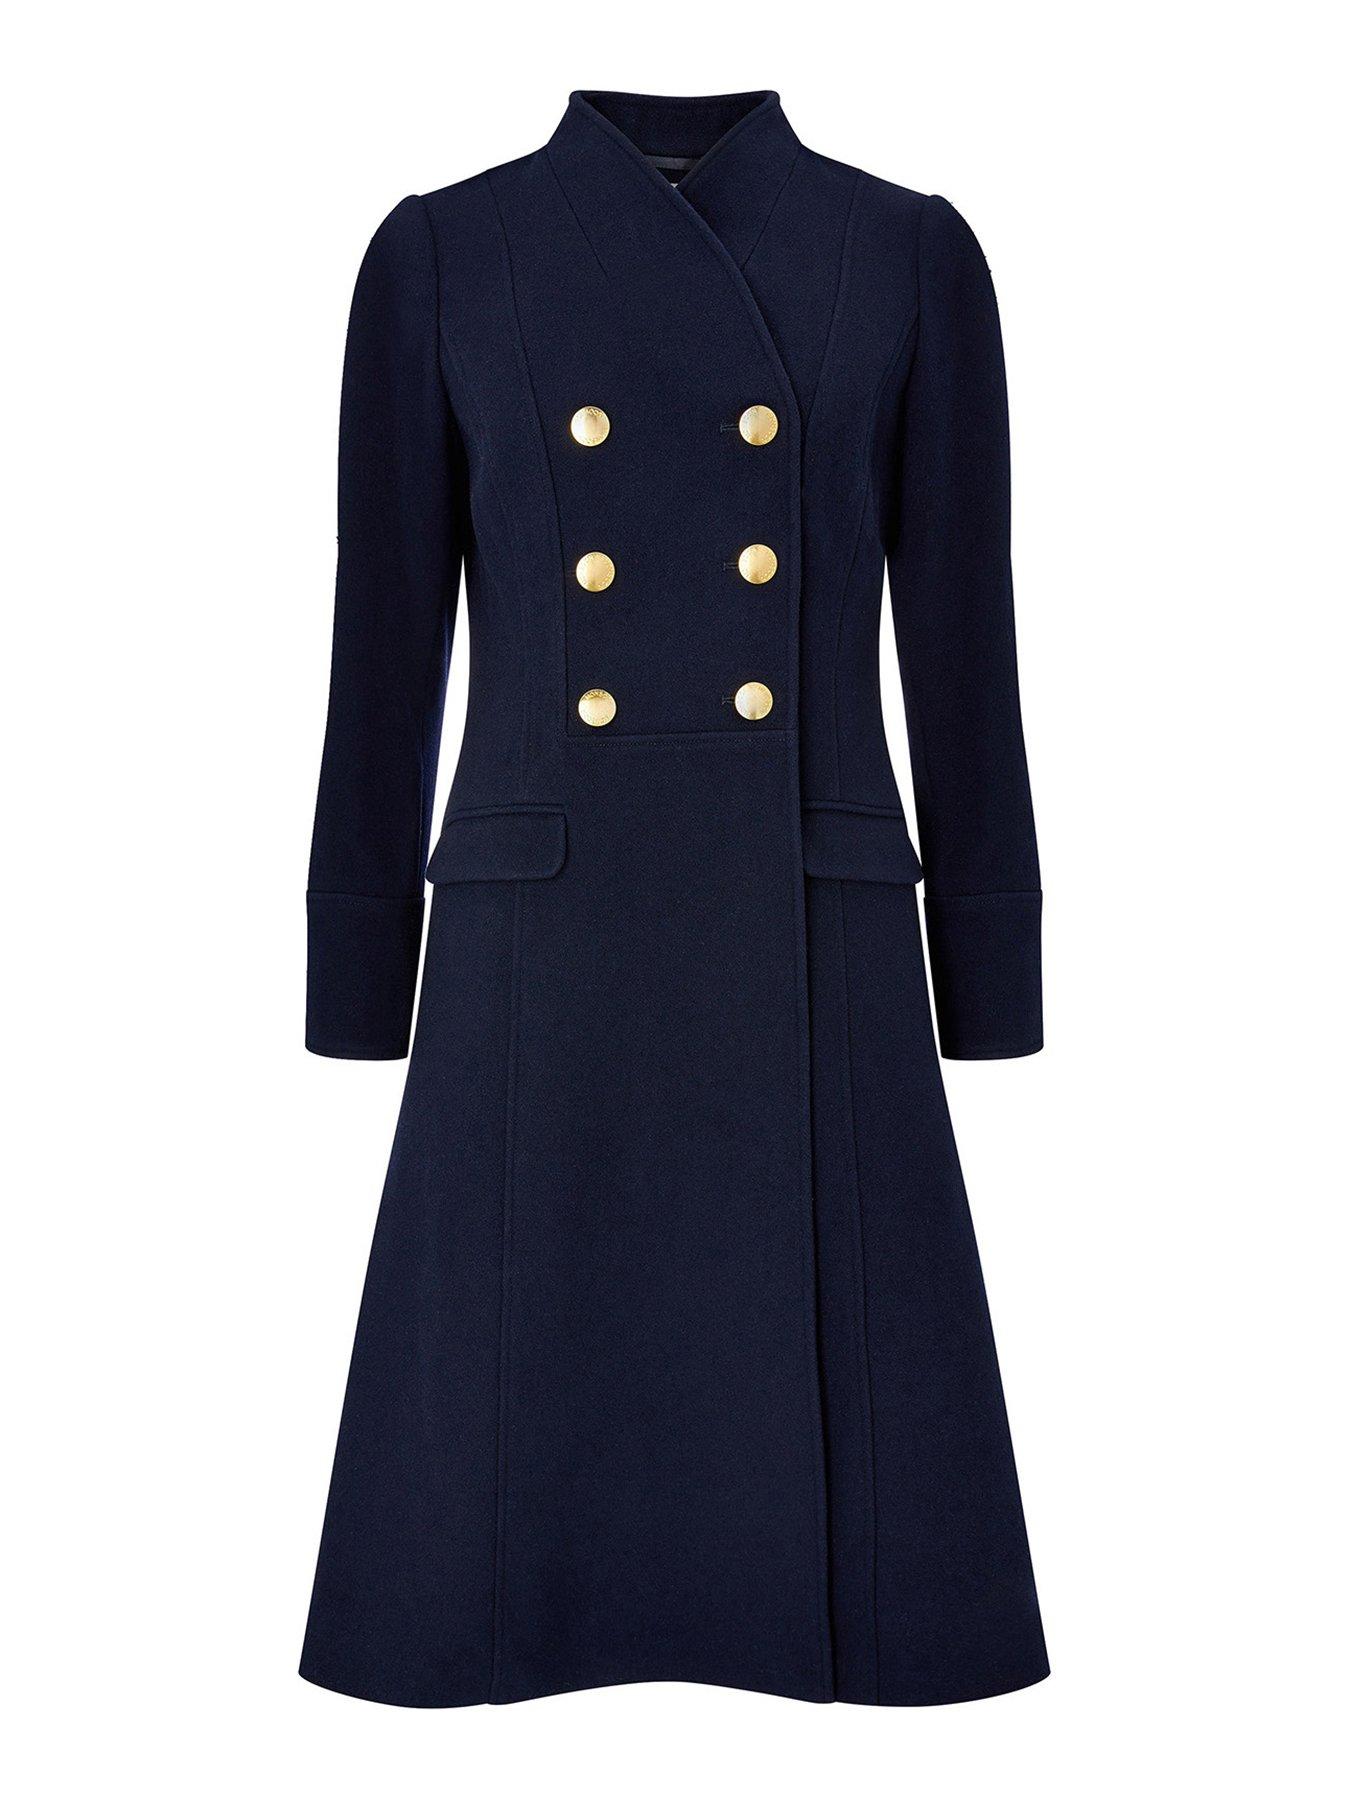 women's casual coats uk